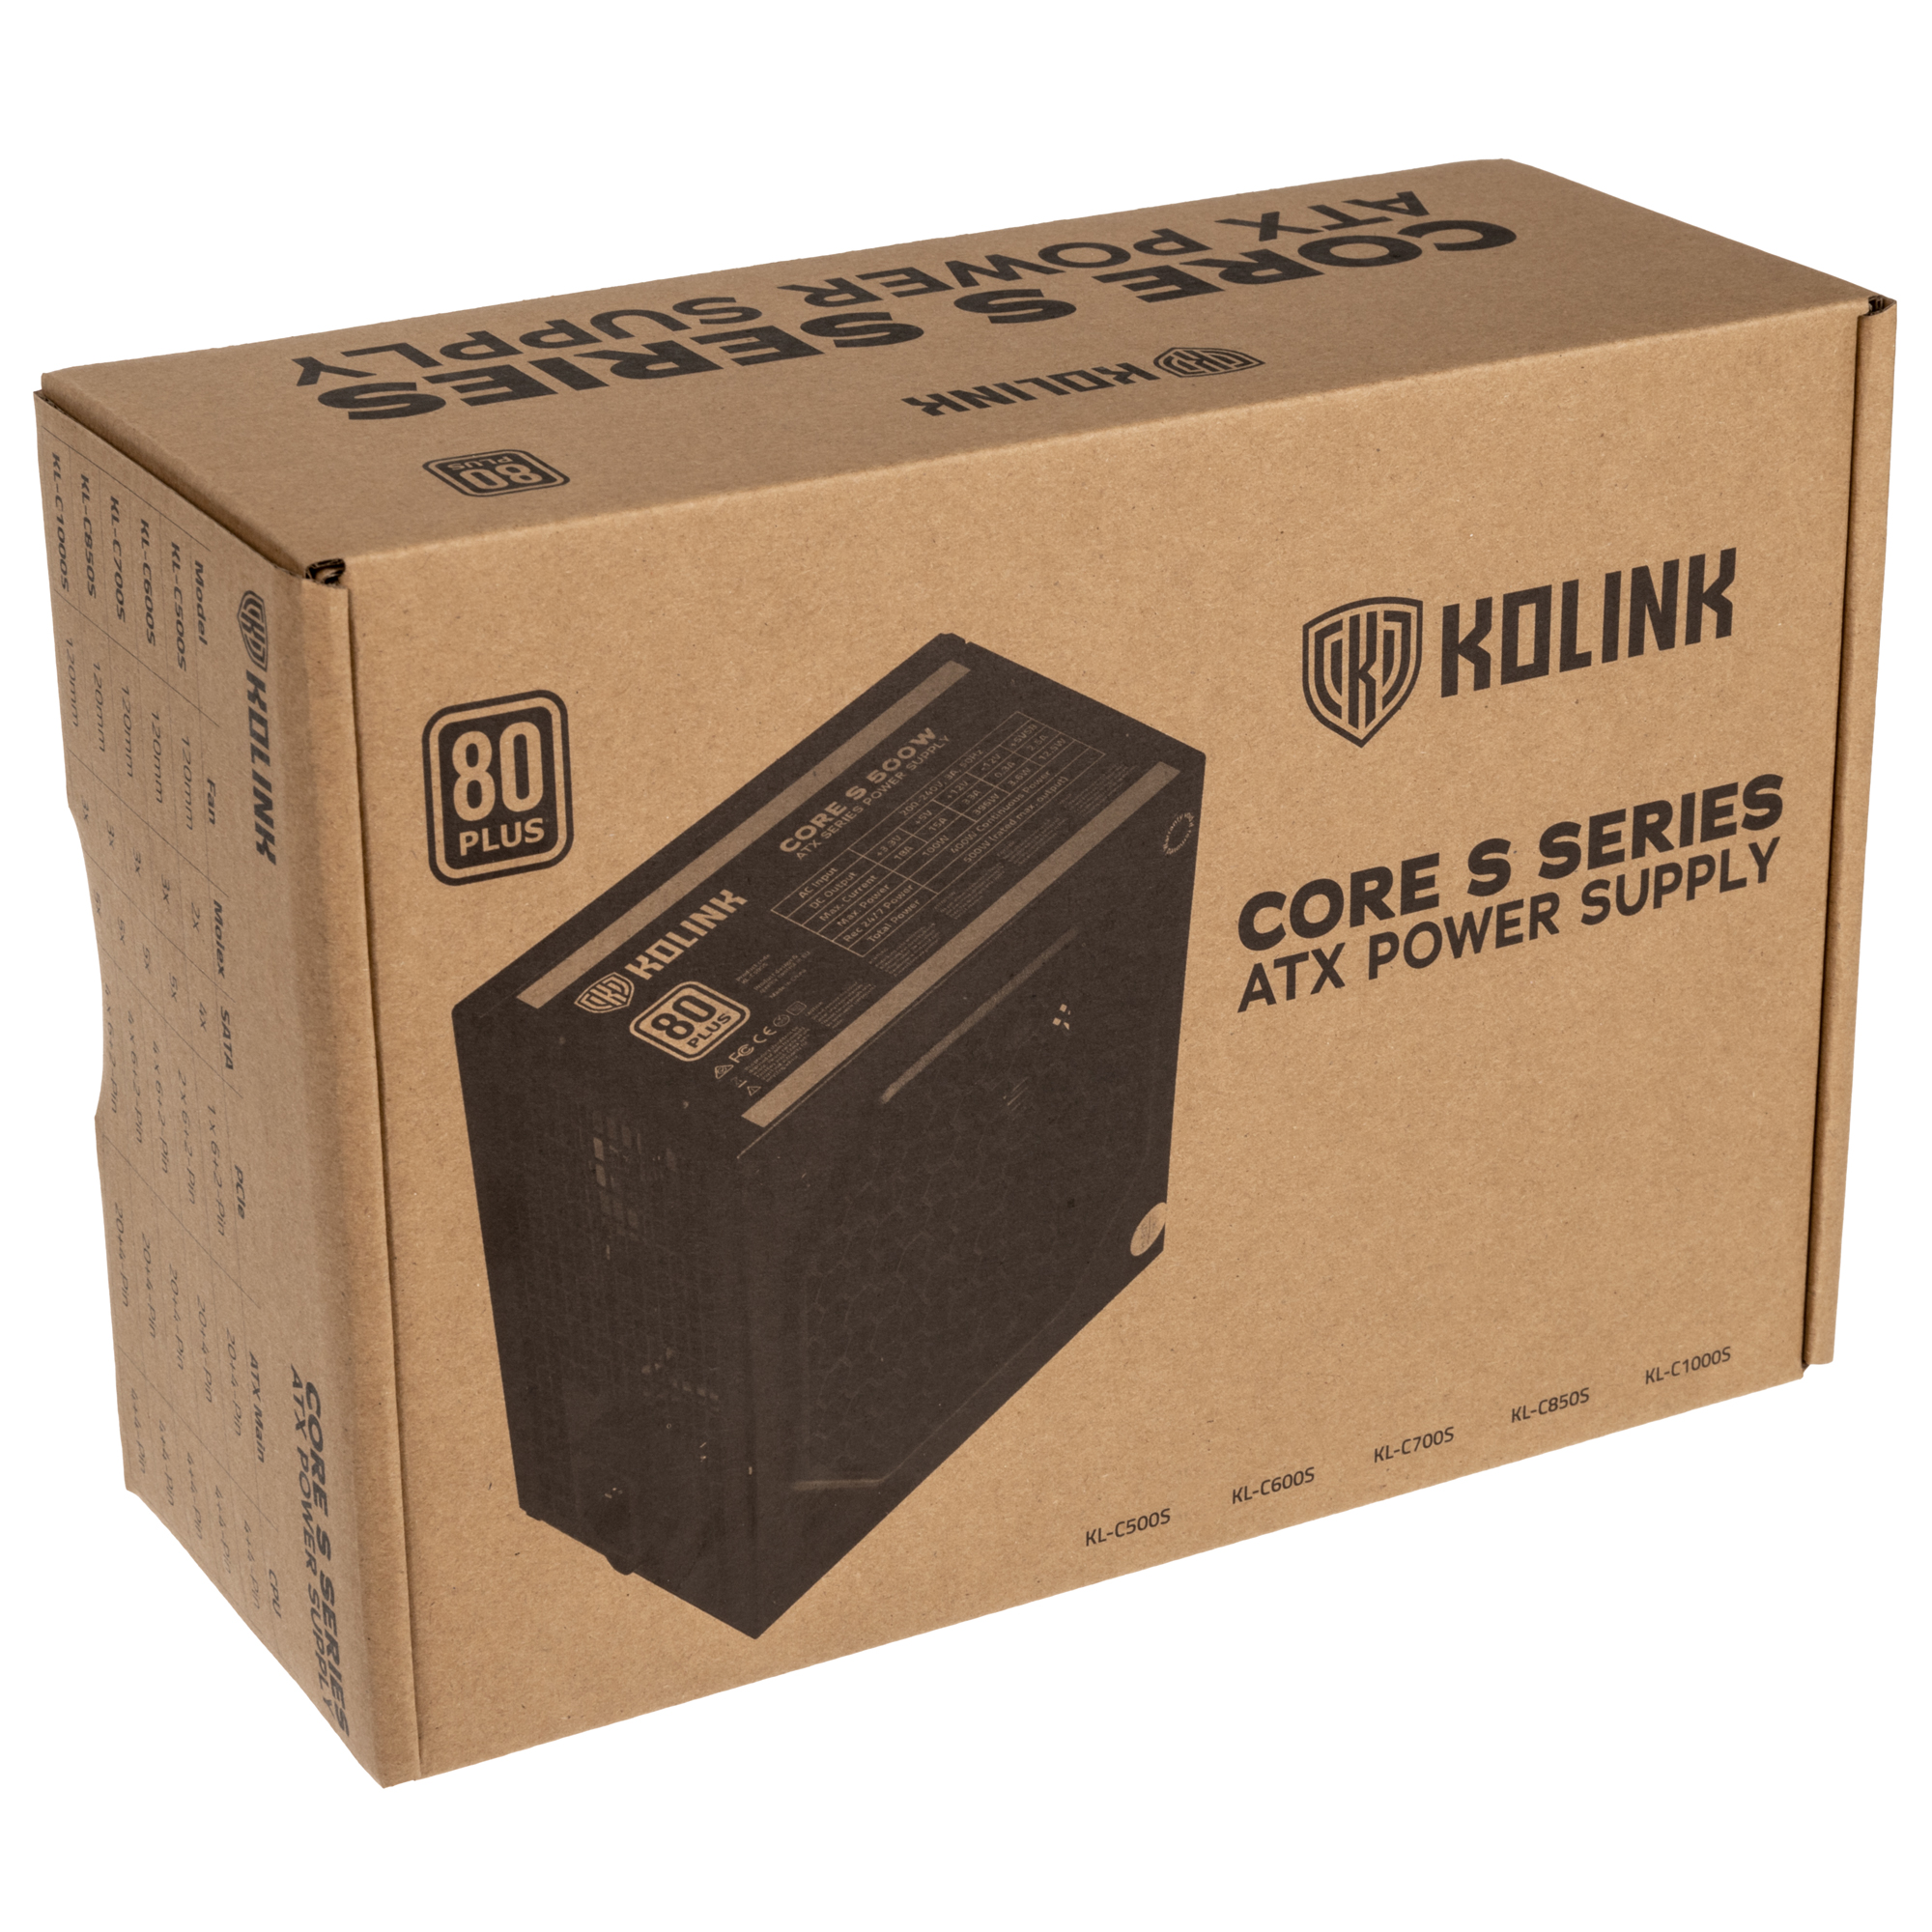 Kolink - Kolink Core S Series 700W 80 Plus Certified Power Supply